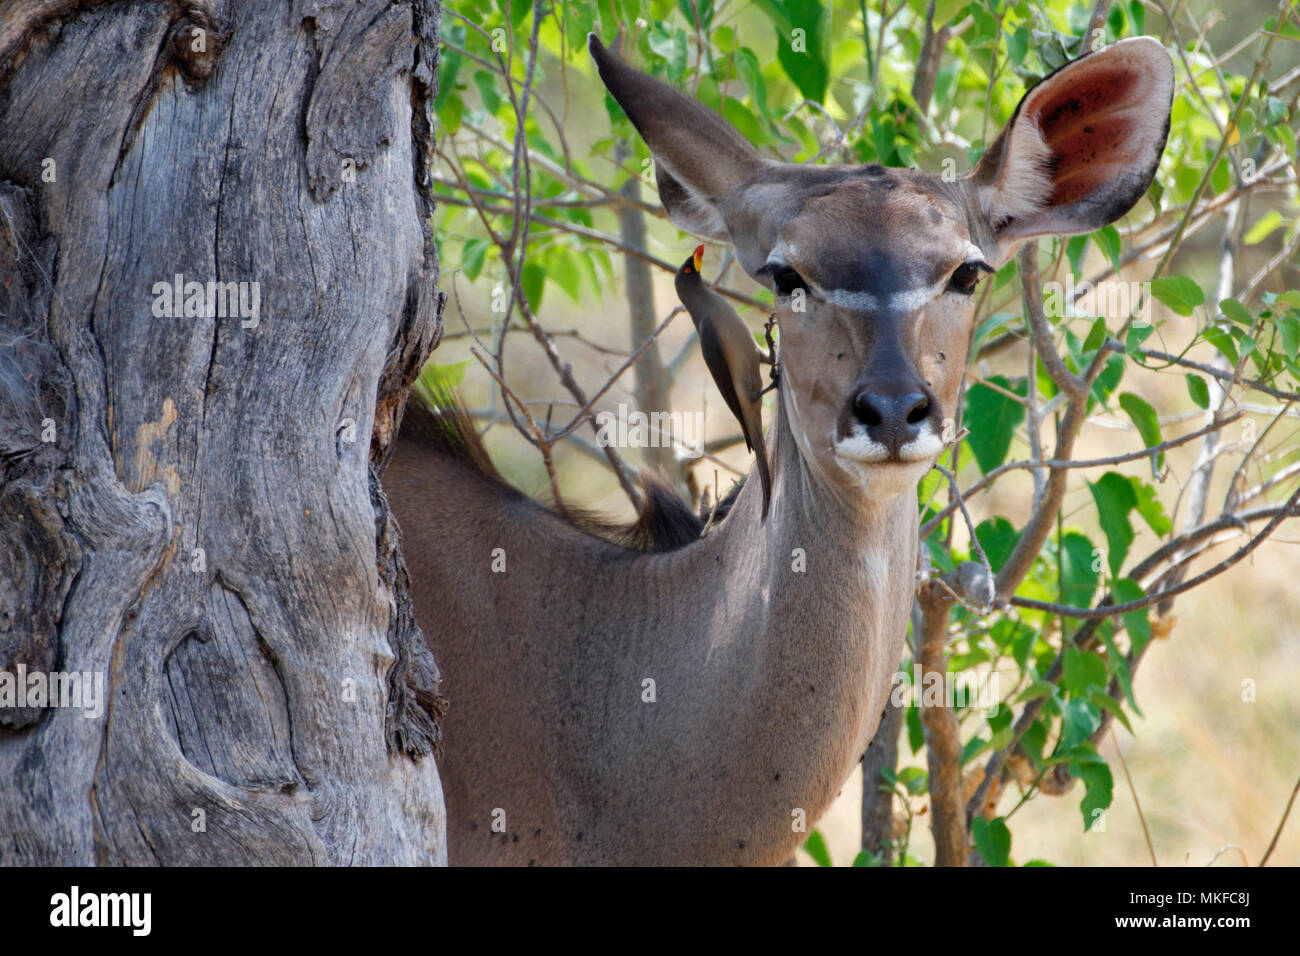 Greater kudu (Tragelaphus strepsiceros) female and oxpecker, Botswana Stock Photo